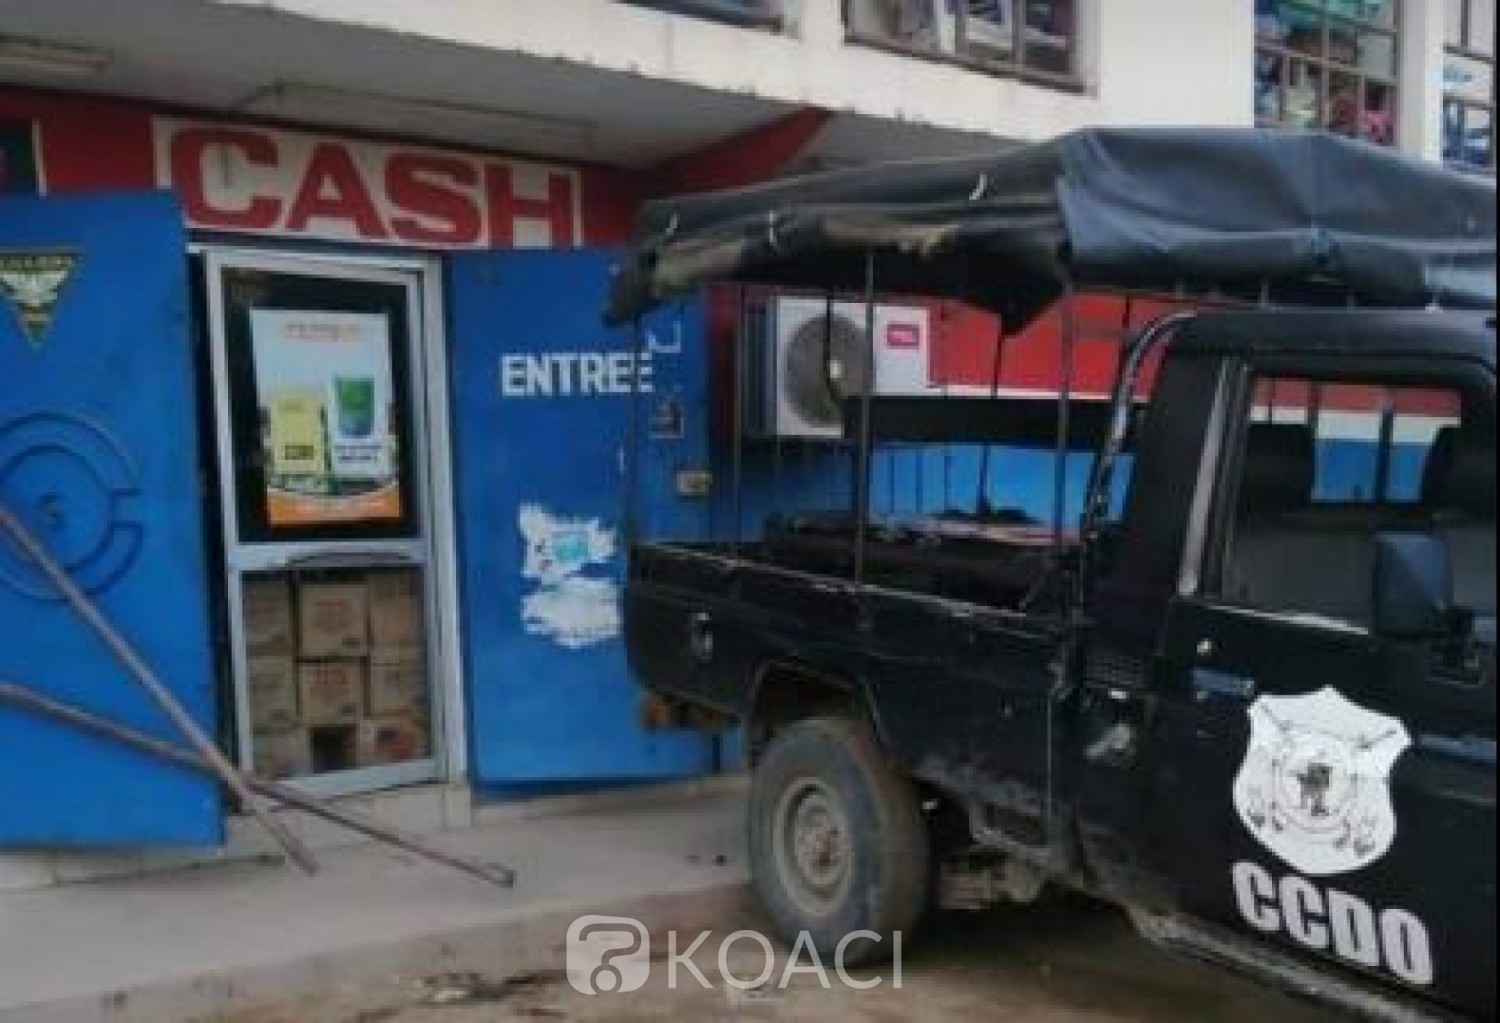 Côte d'Ivoire: Braquage d'un supermarché à Cocody, 20 ans d'emprisonnement ferme pour l'un des braqueurs et 02ans pour une complice